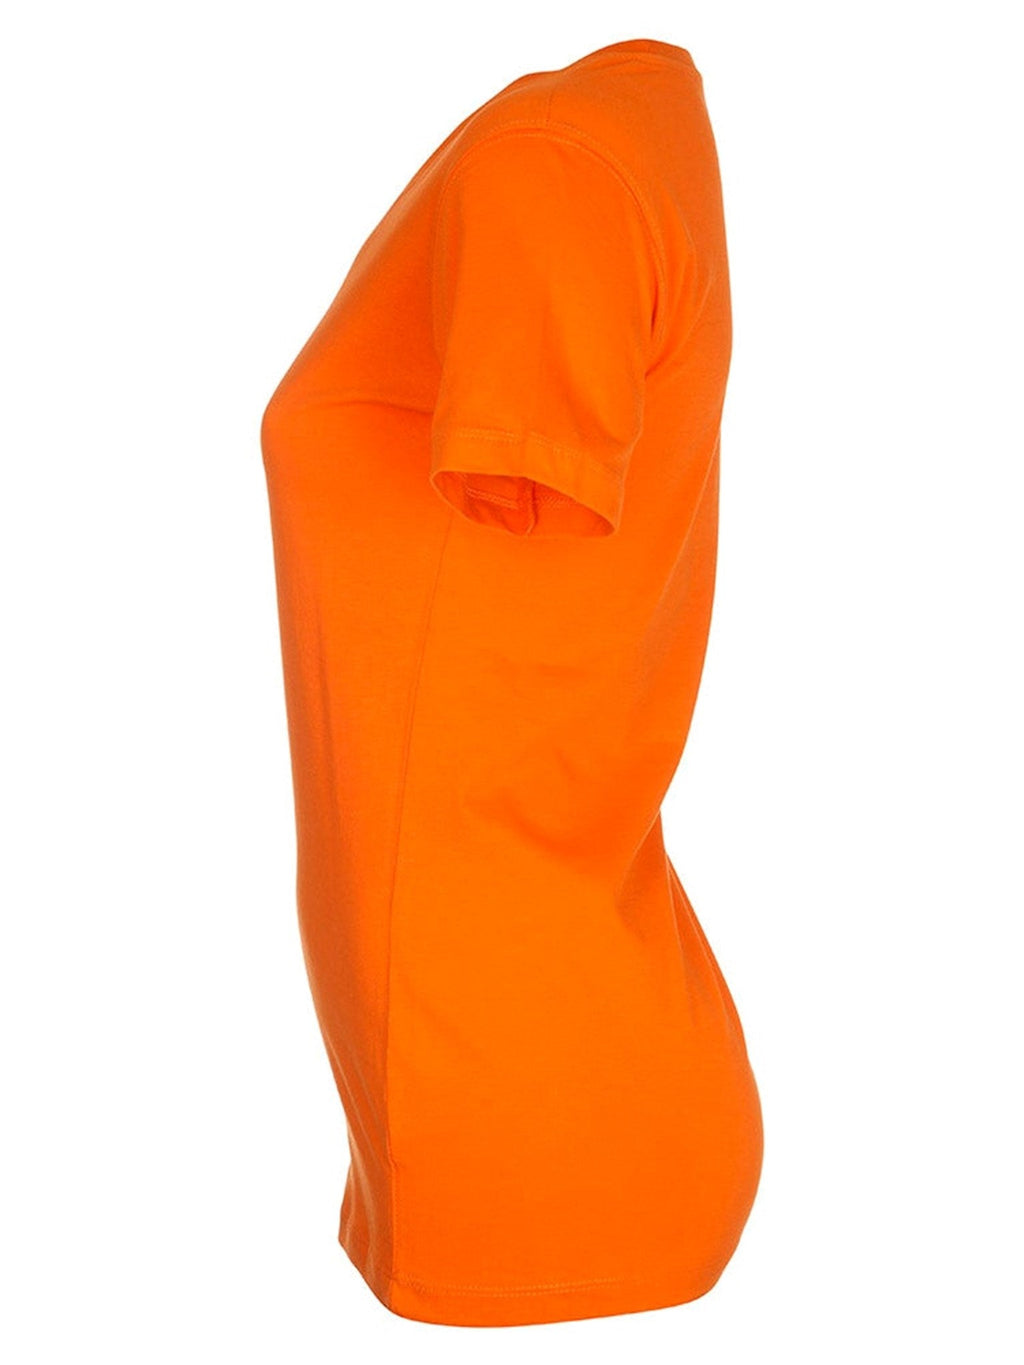 Įrengti marškinėliai - oranžiniai